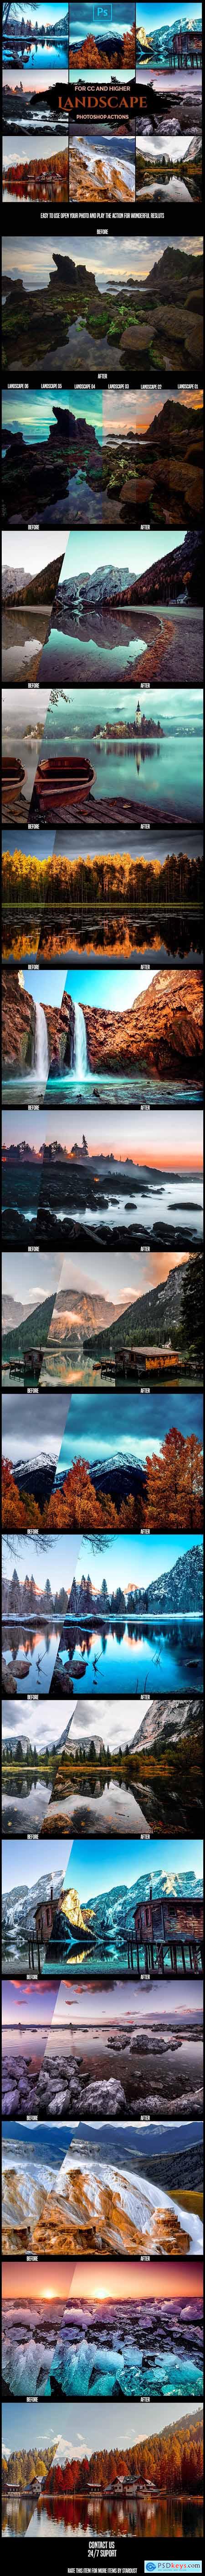 Landscape - Pro Photoshop Actions 26070745